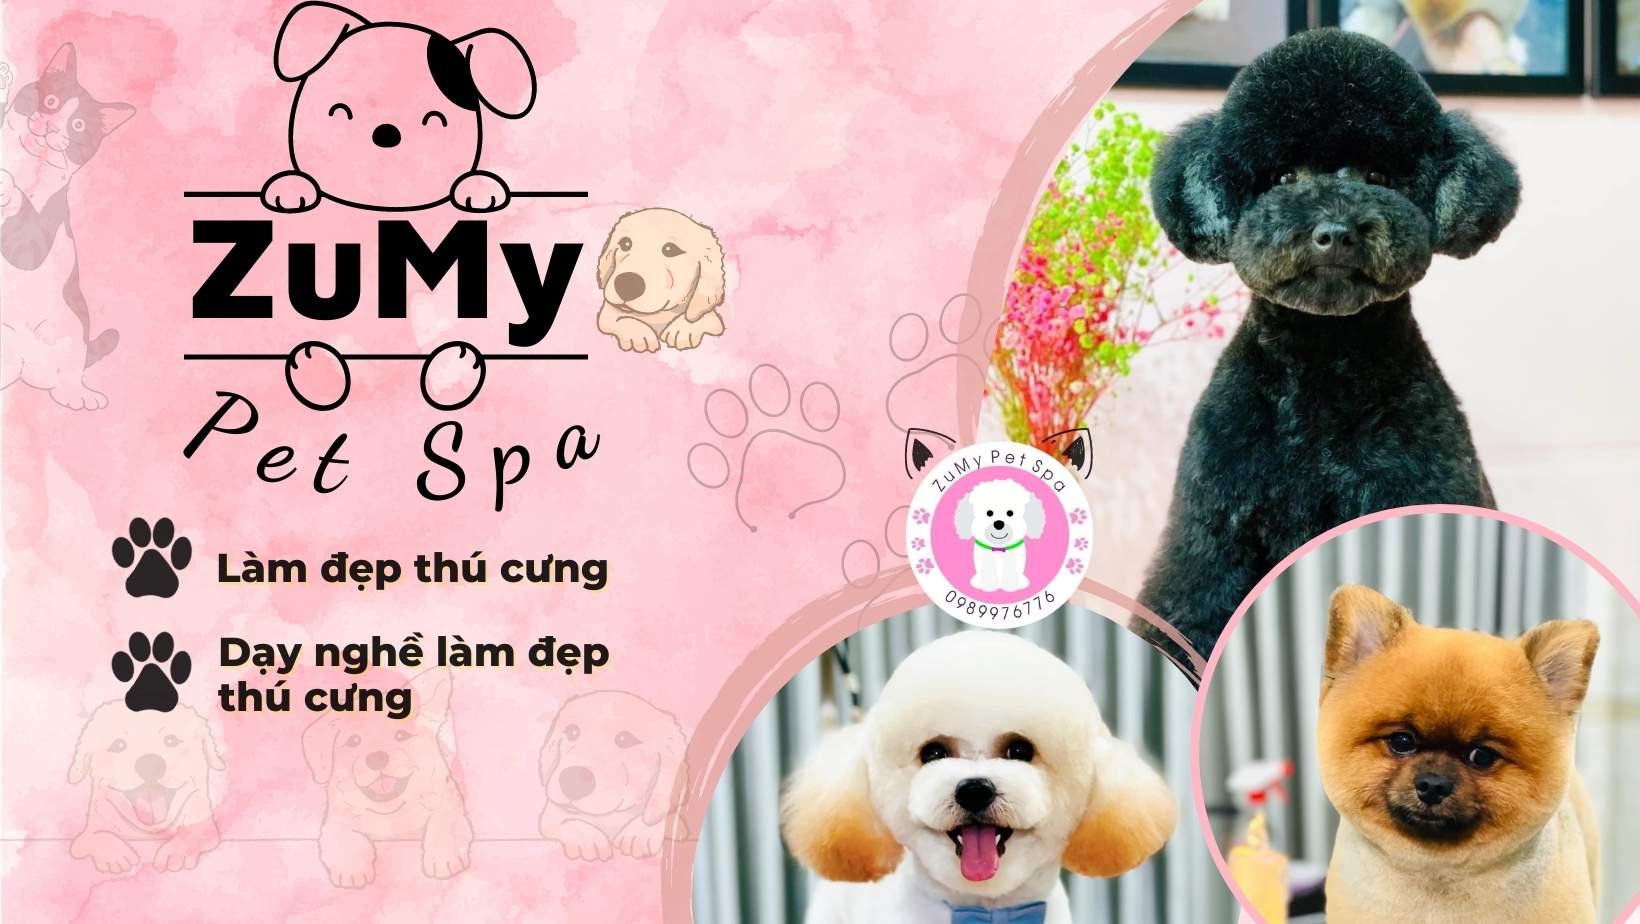 Zumy Pet Spa Dịch Vụ Làm Đẹp Thú Cưng Chuyên Nghiệp, Uy Tín Tại Hóc Môn